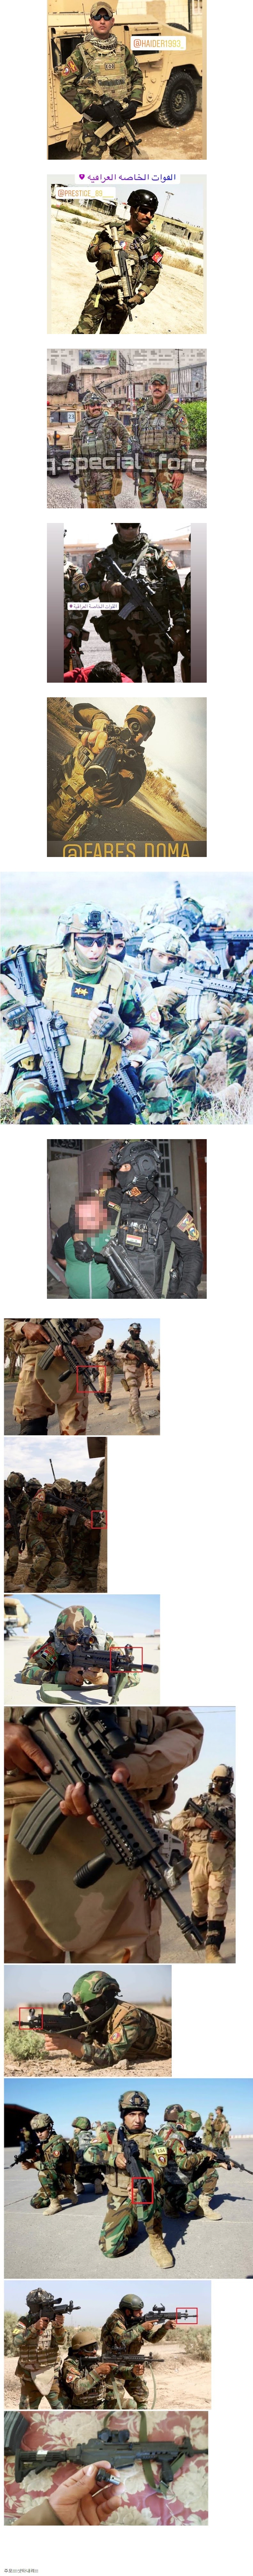 이라크군이 쓰는 K2C 소총